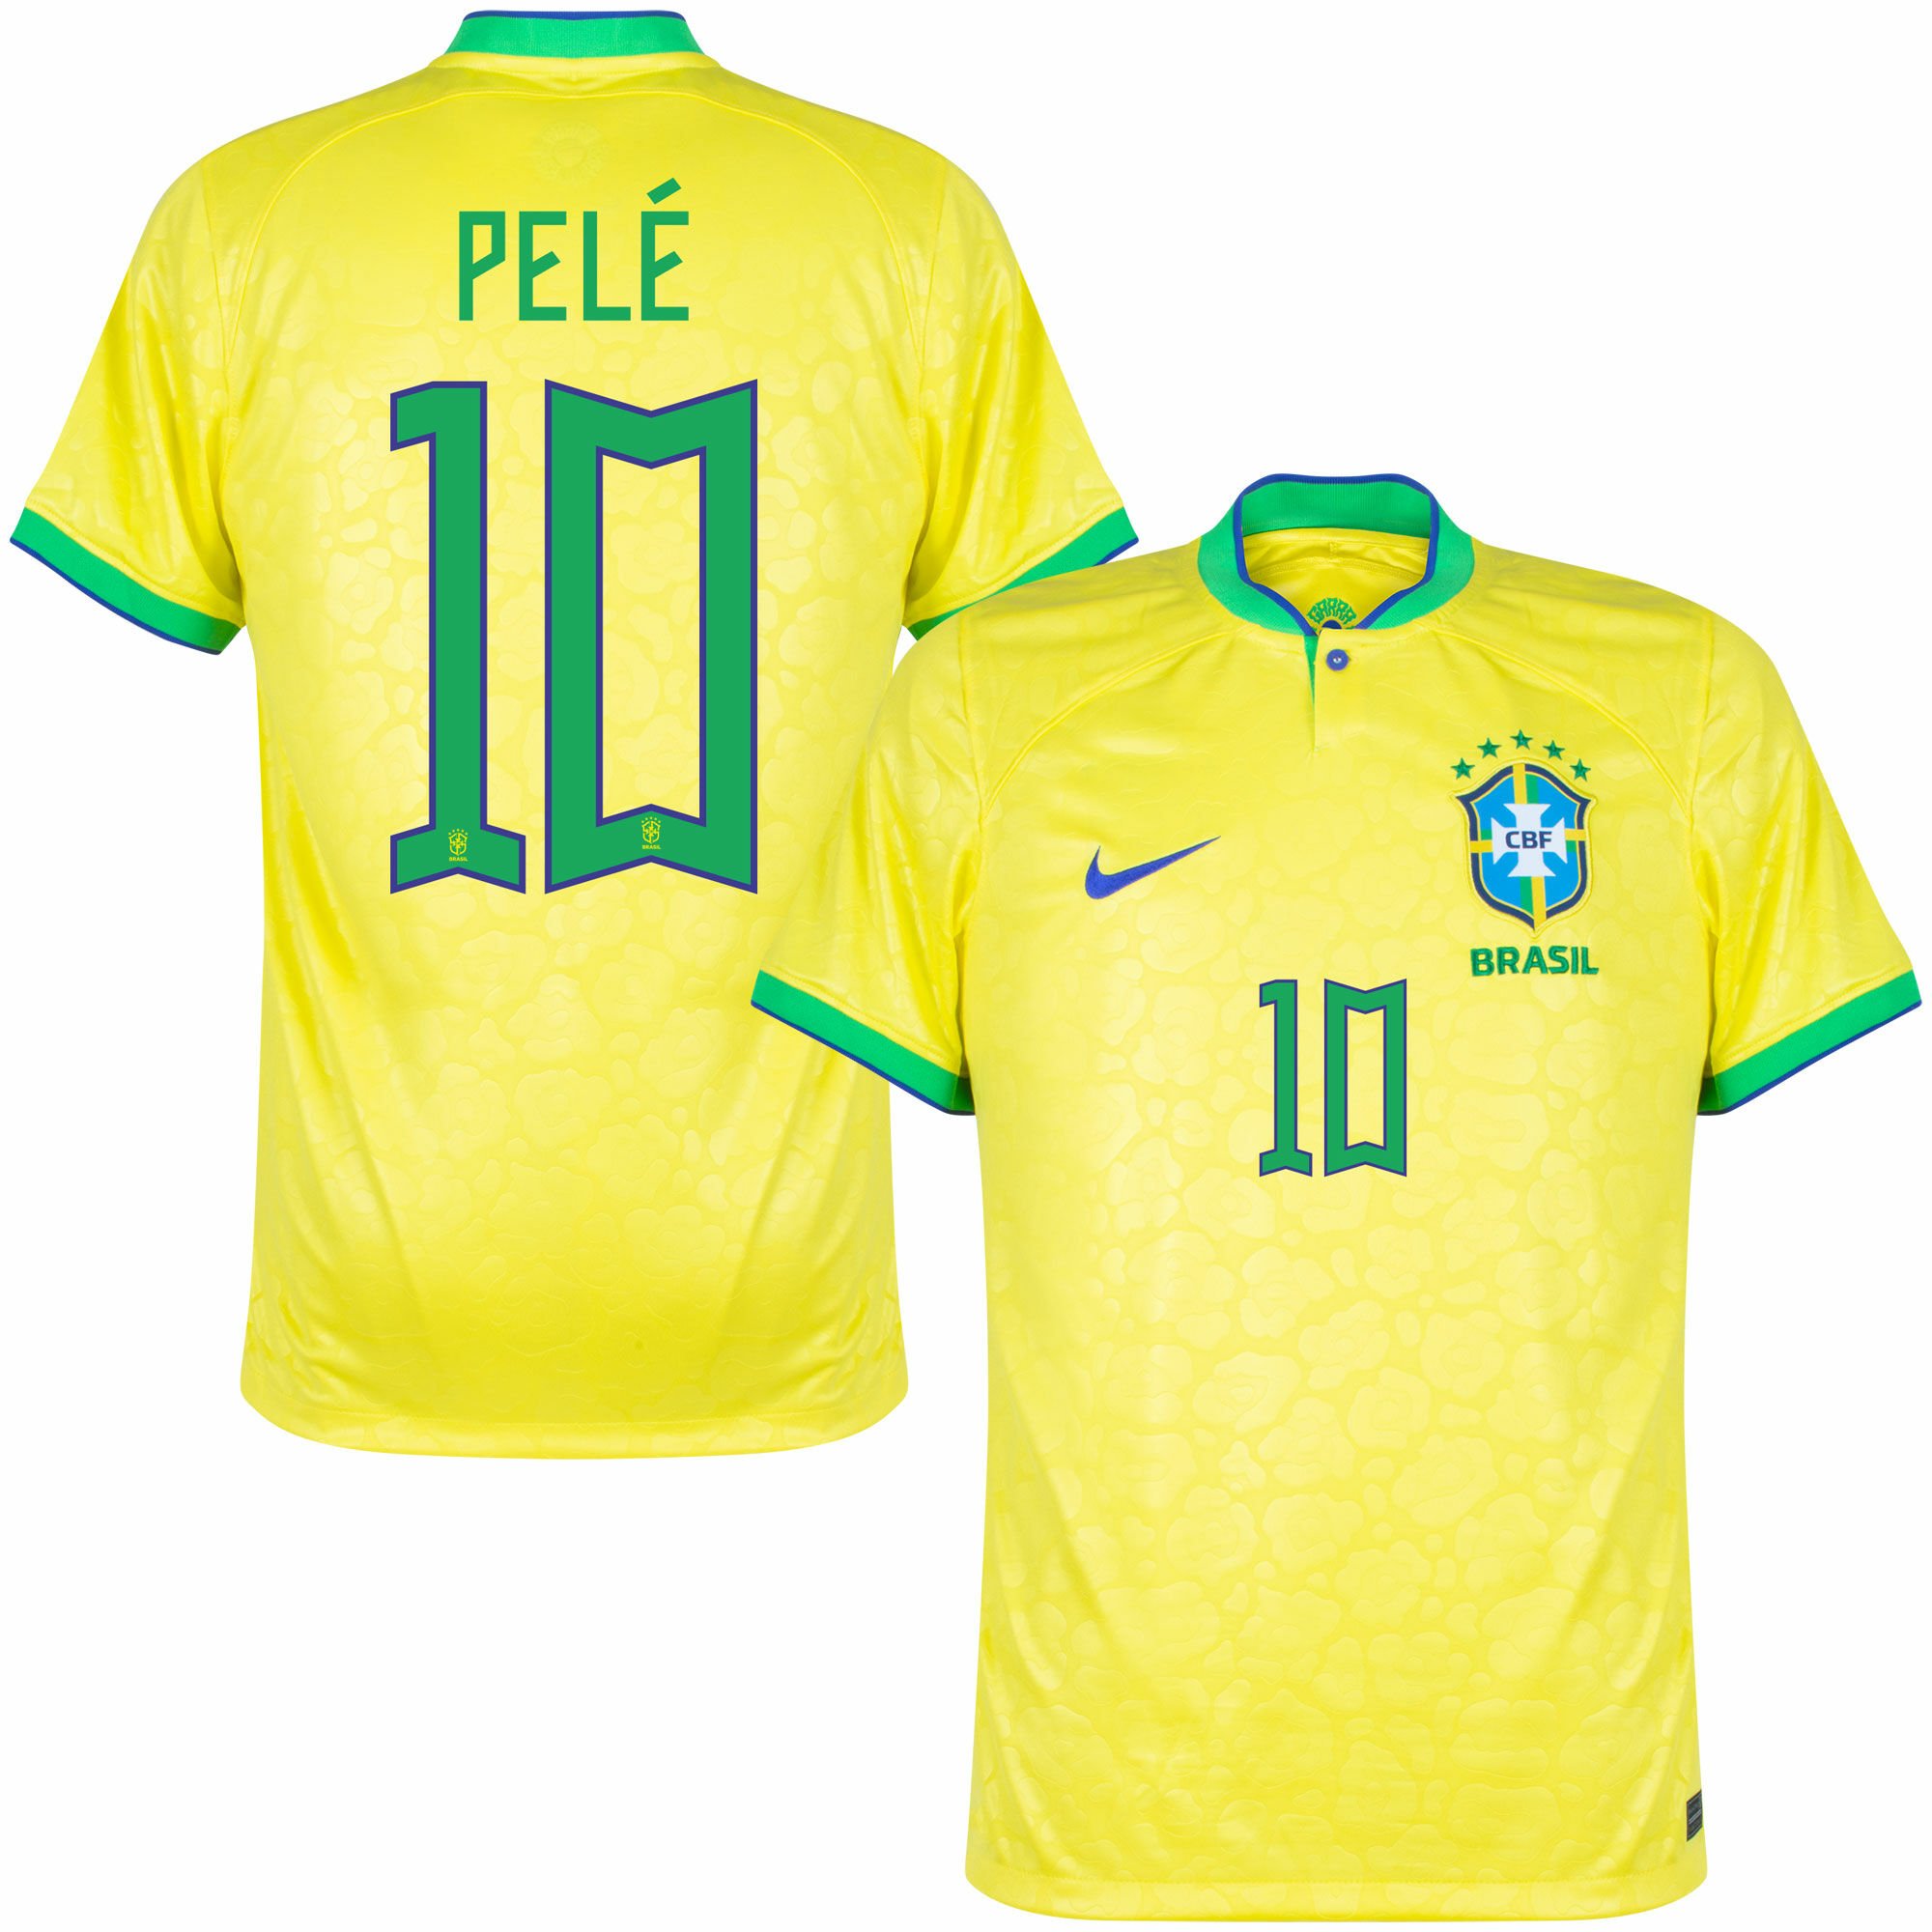 Brazílie - Dres fotbalový - oficiální potisk, Pelé, žlutý, číslo 10, domácí, sezóna 2022/23